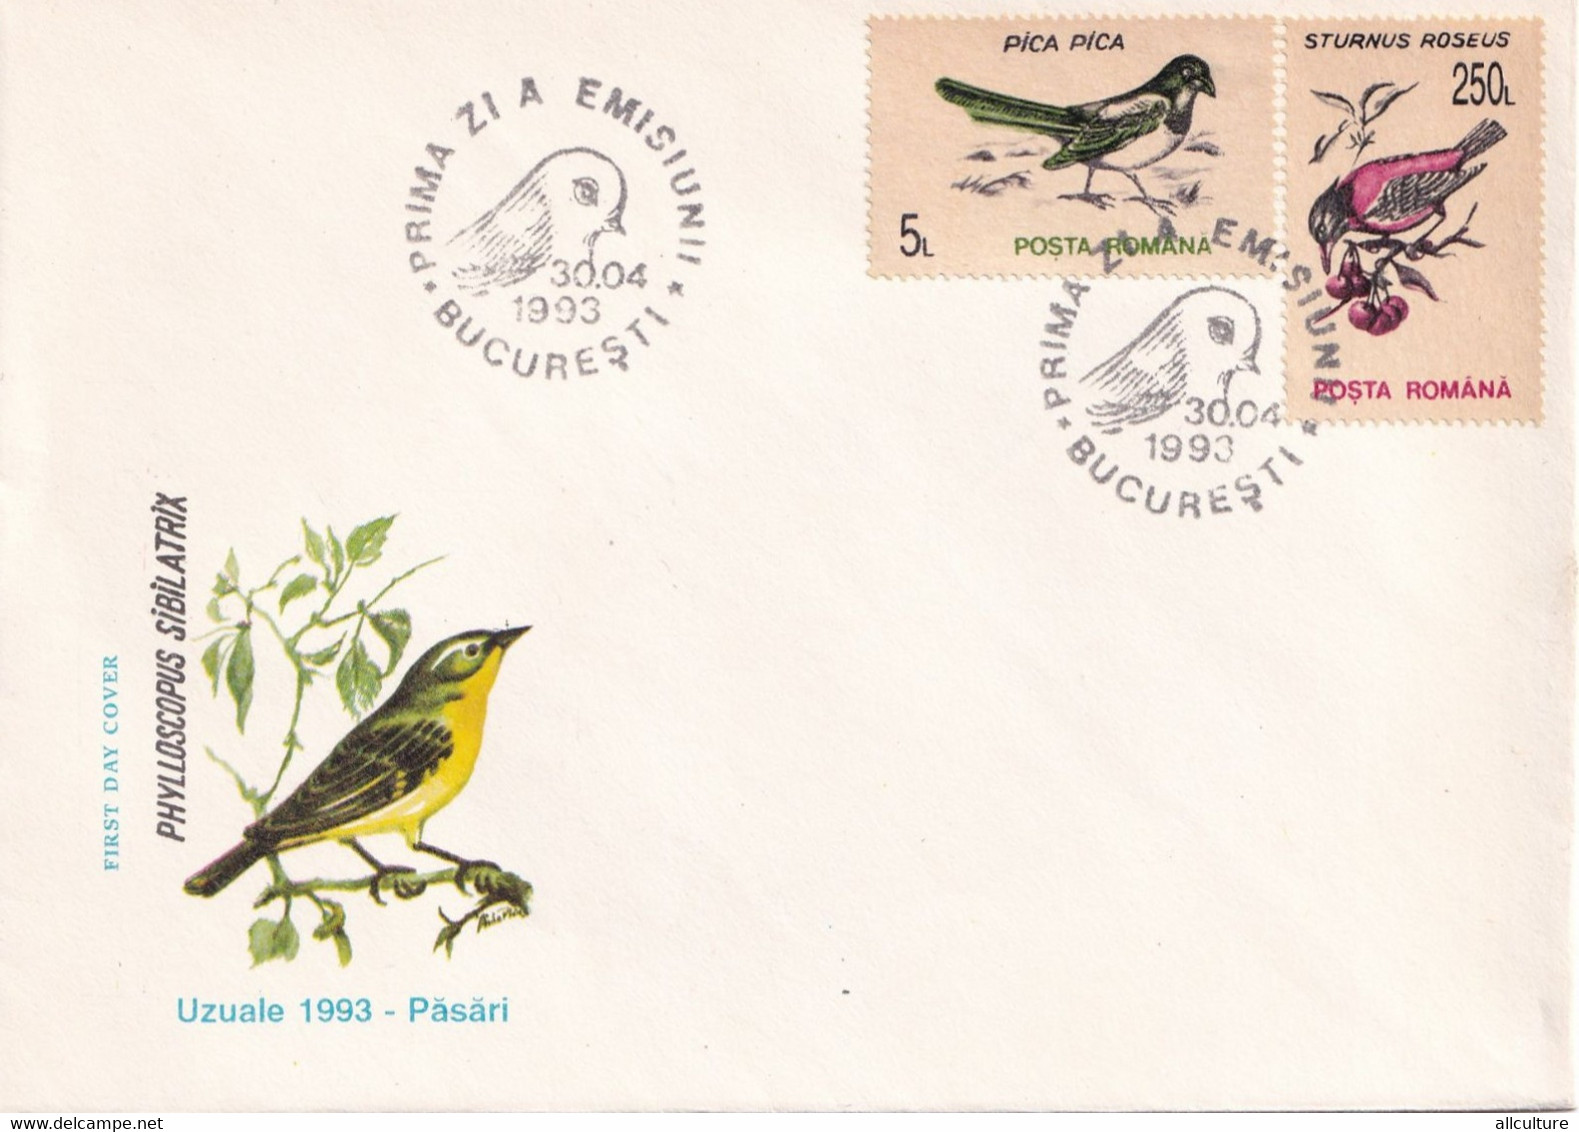 A2711 - Pasari, Uzuale 1993, Romania, Prima Zi De Emisiune Bucuresti 1993  3 Covers FDC - Specht- & Bartvögel